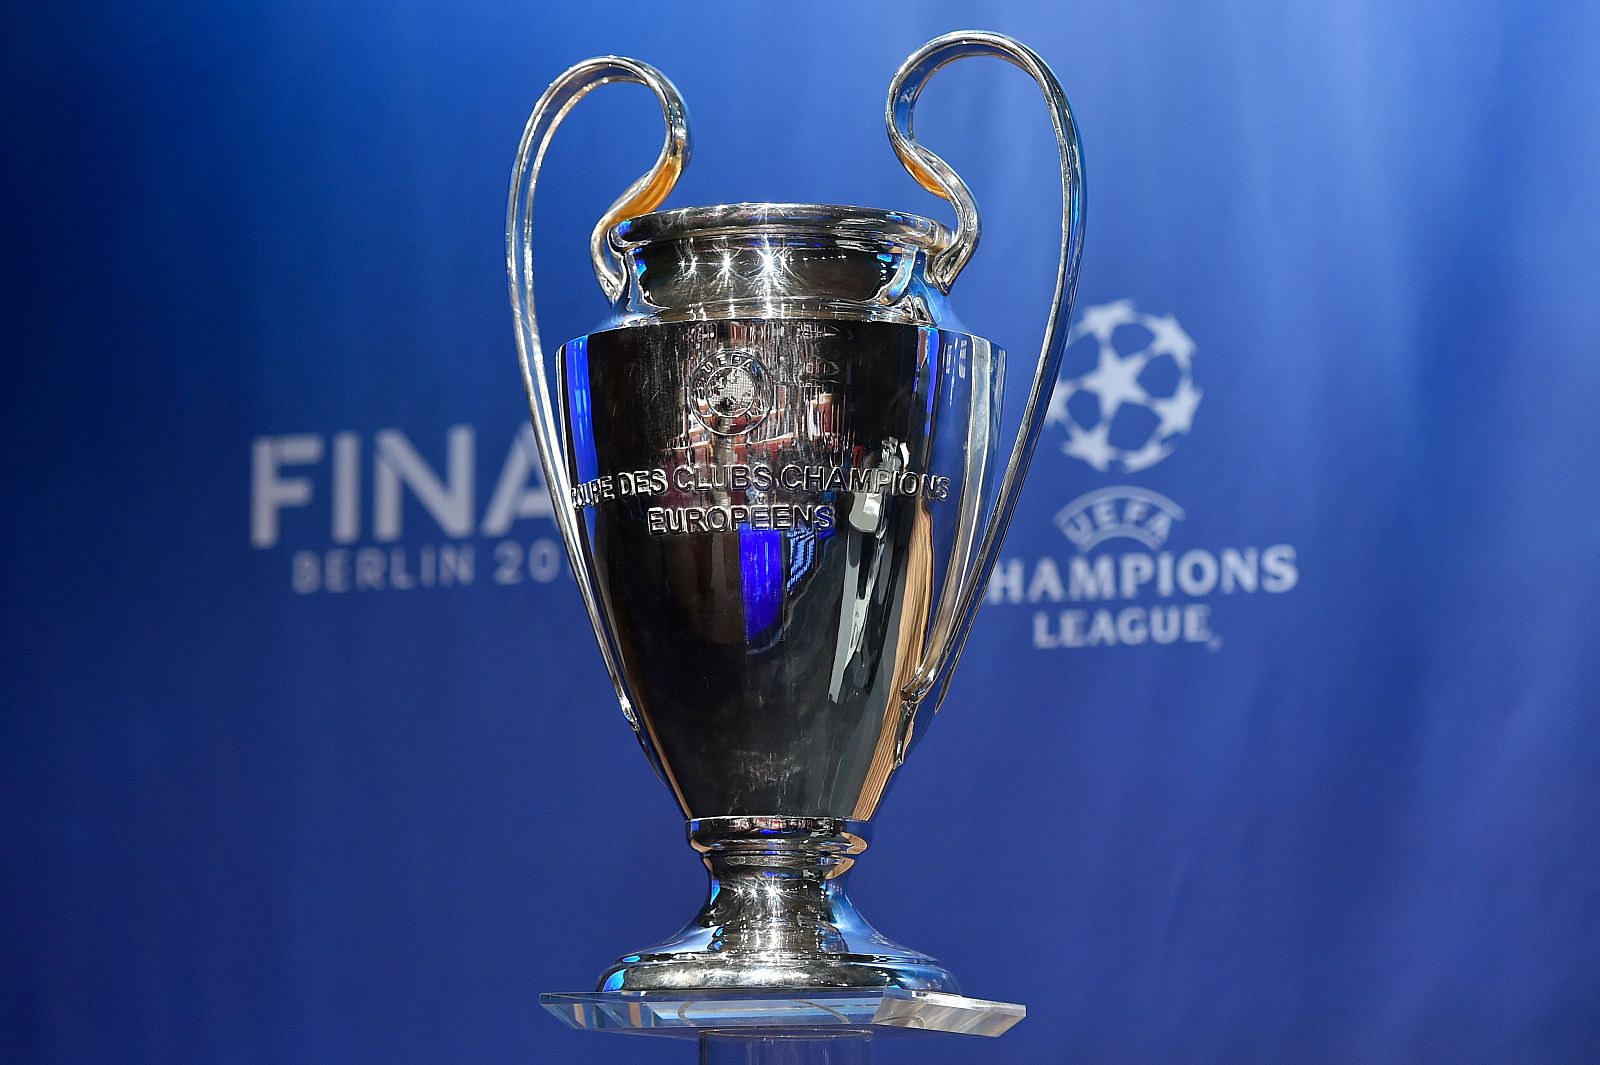 Imagen del deseado trofeo de la UEFA Champions League que se entregará al vencedor en Berlín.